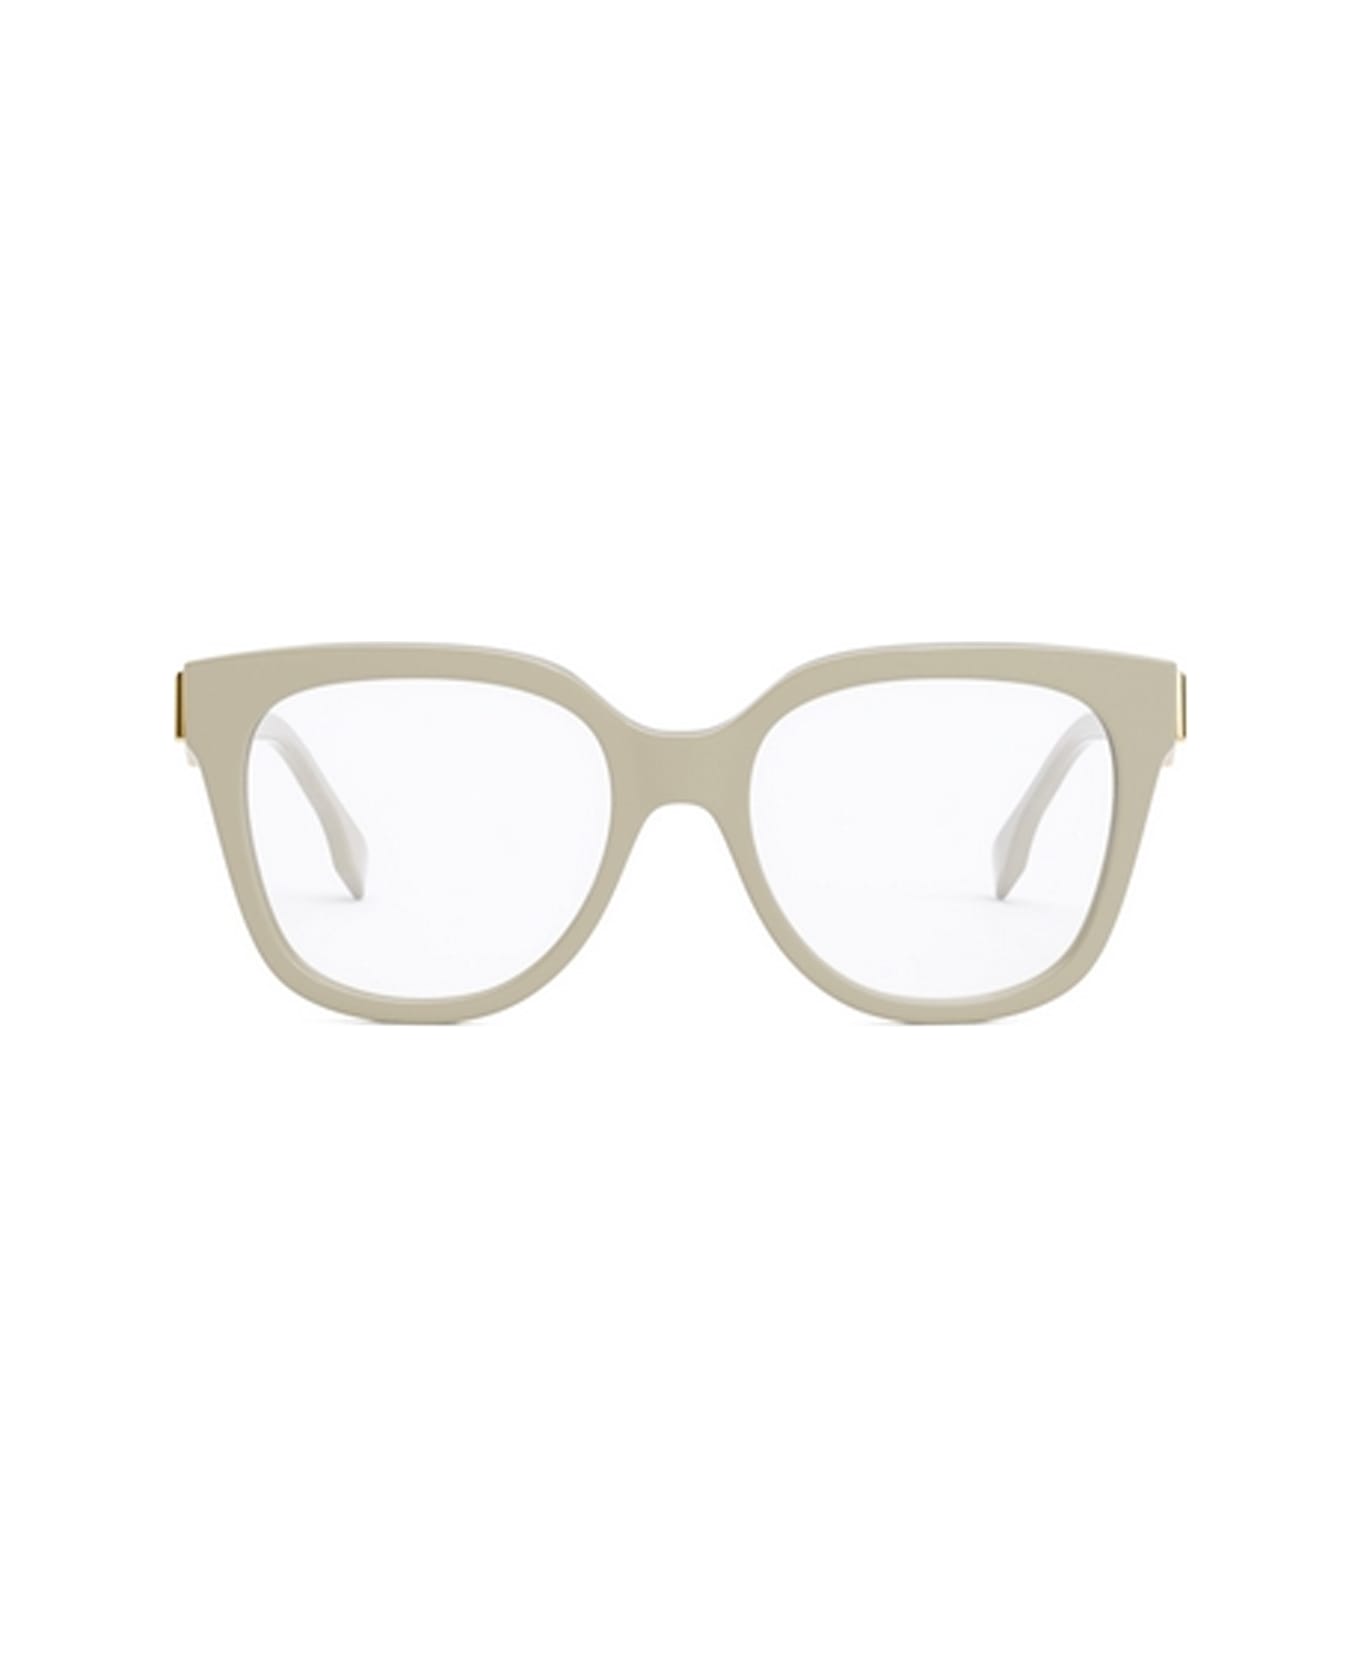 Fendi Eyewear Fe50064i 025 Glasses - Avorio アイウェア